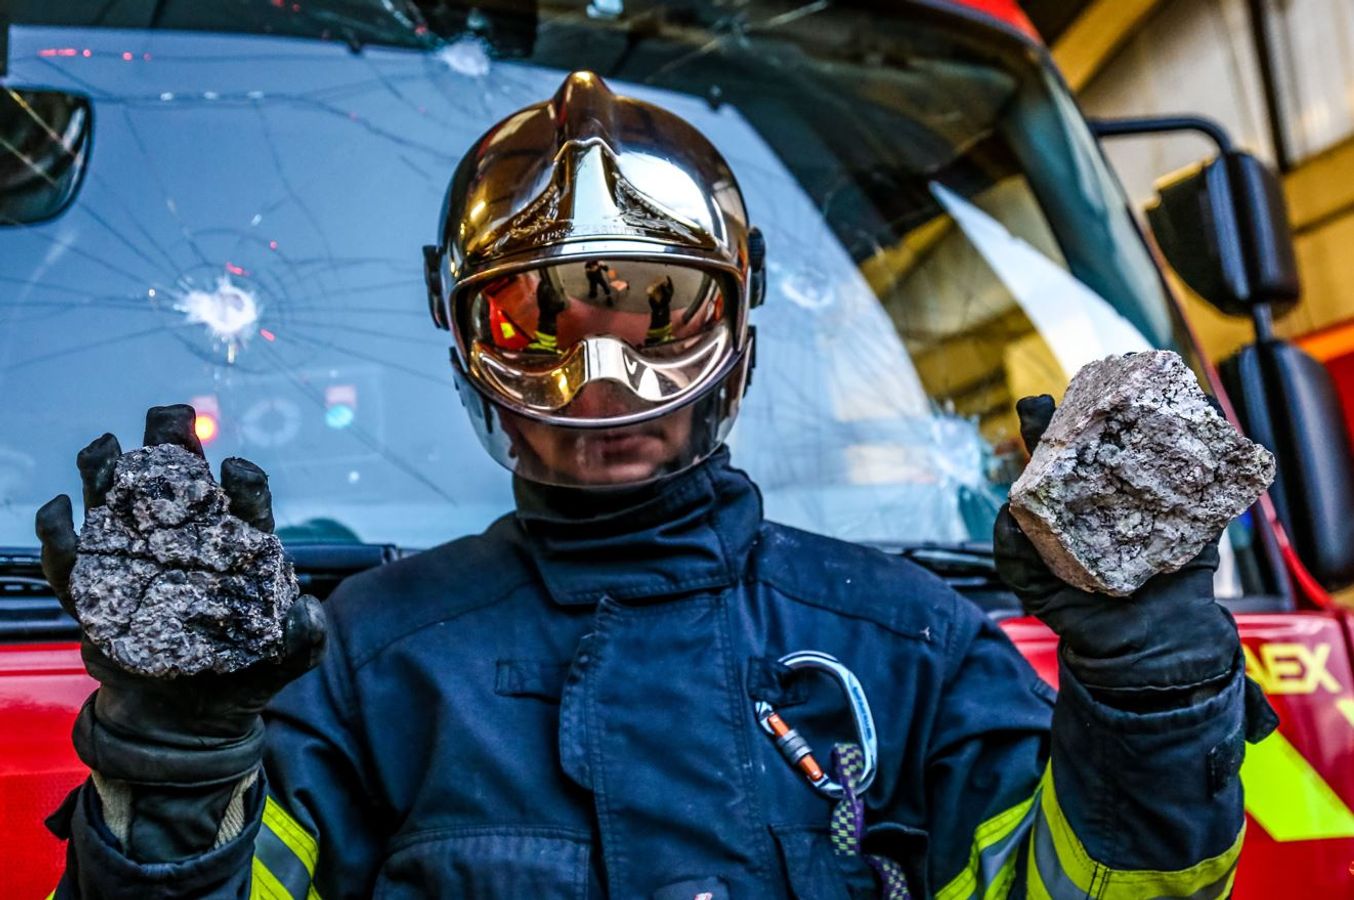 Violences envers les sapeurs-pompiers : quel constat ? Quelles solutions ? Regards croisés entre la France et la Suisse